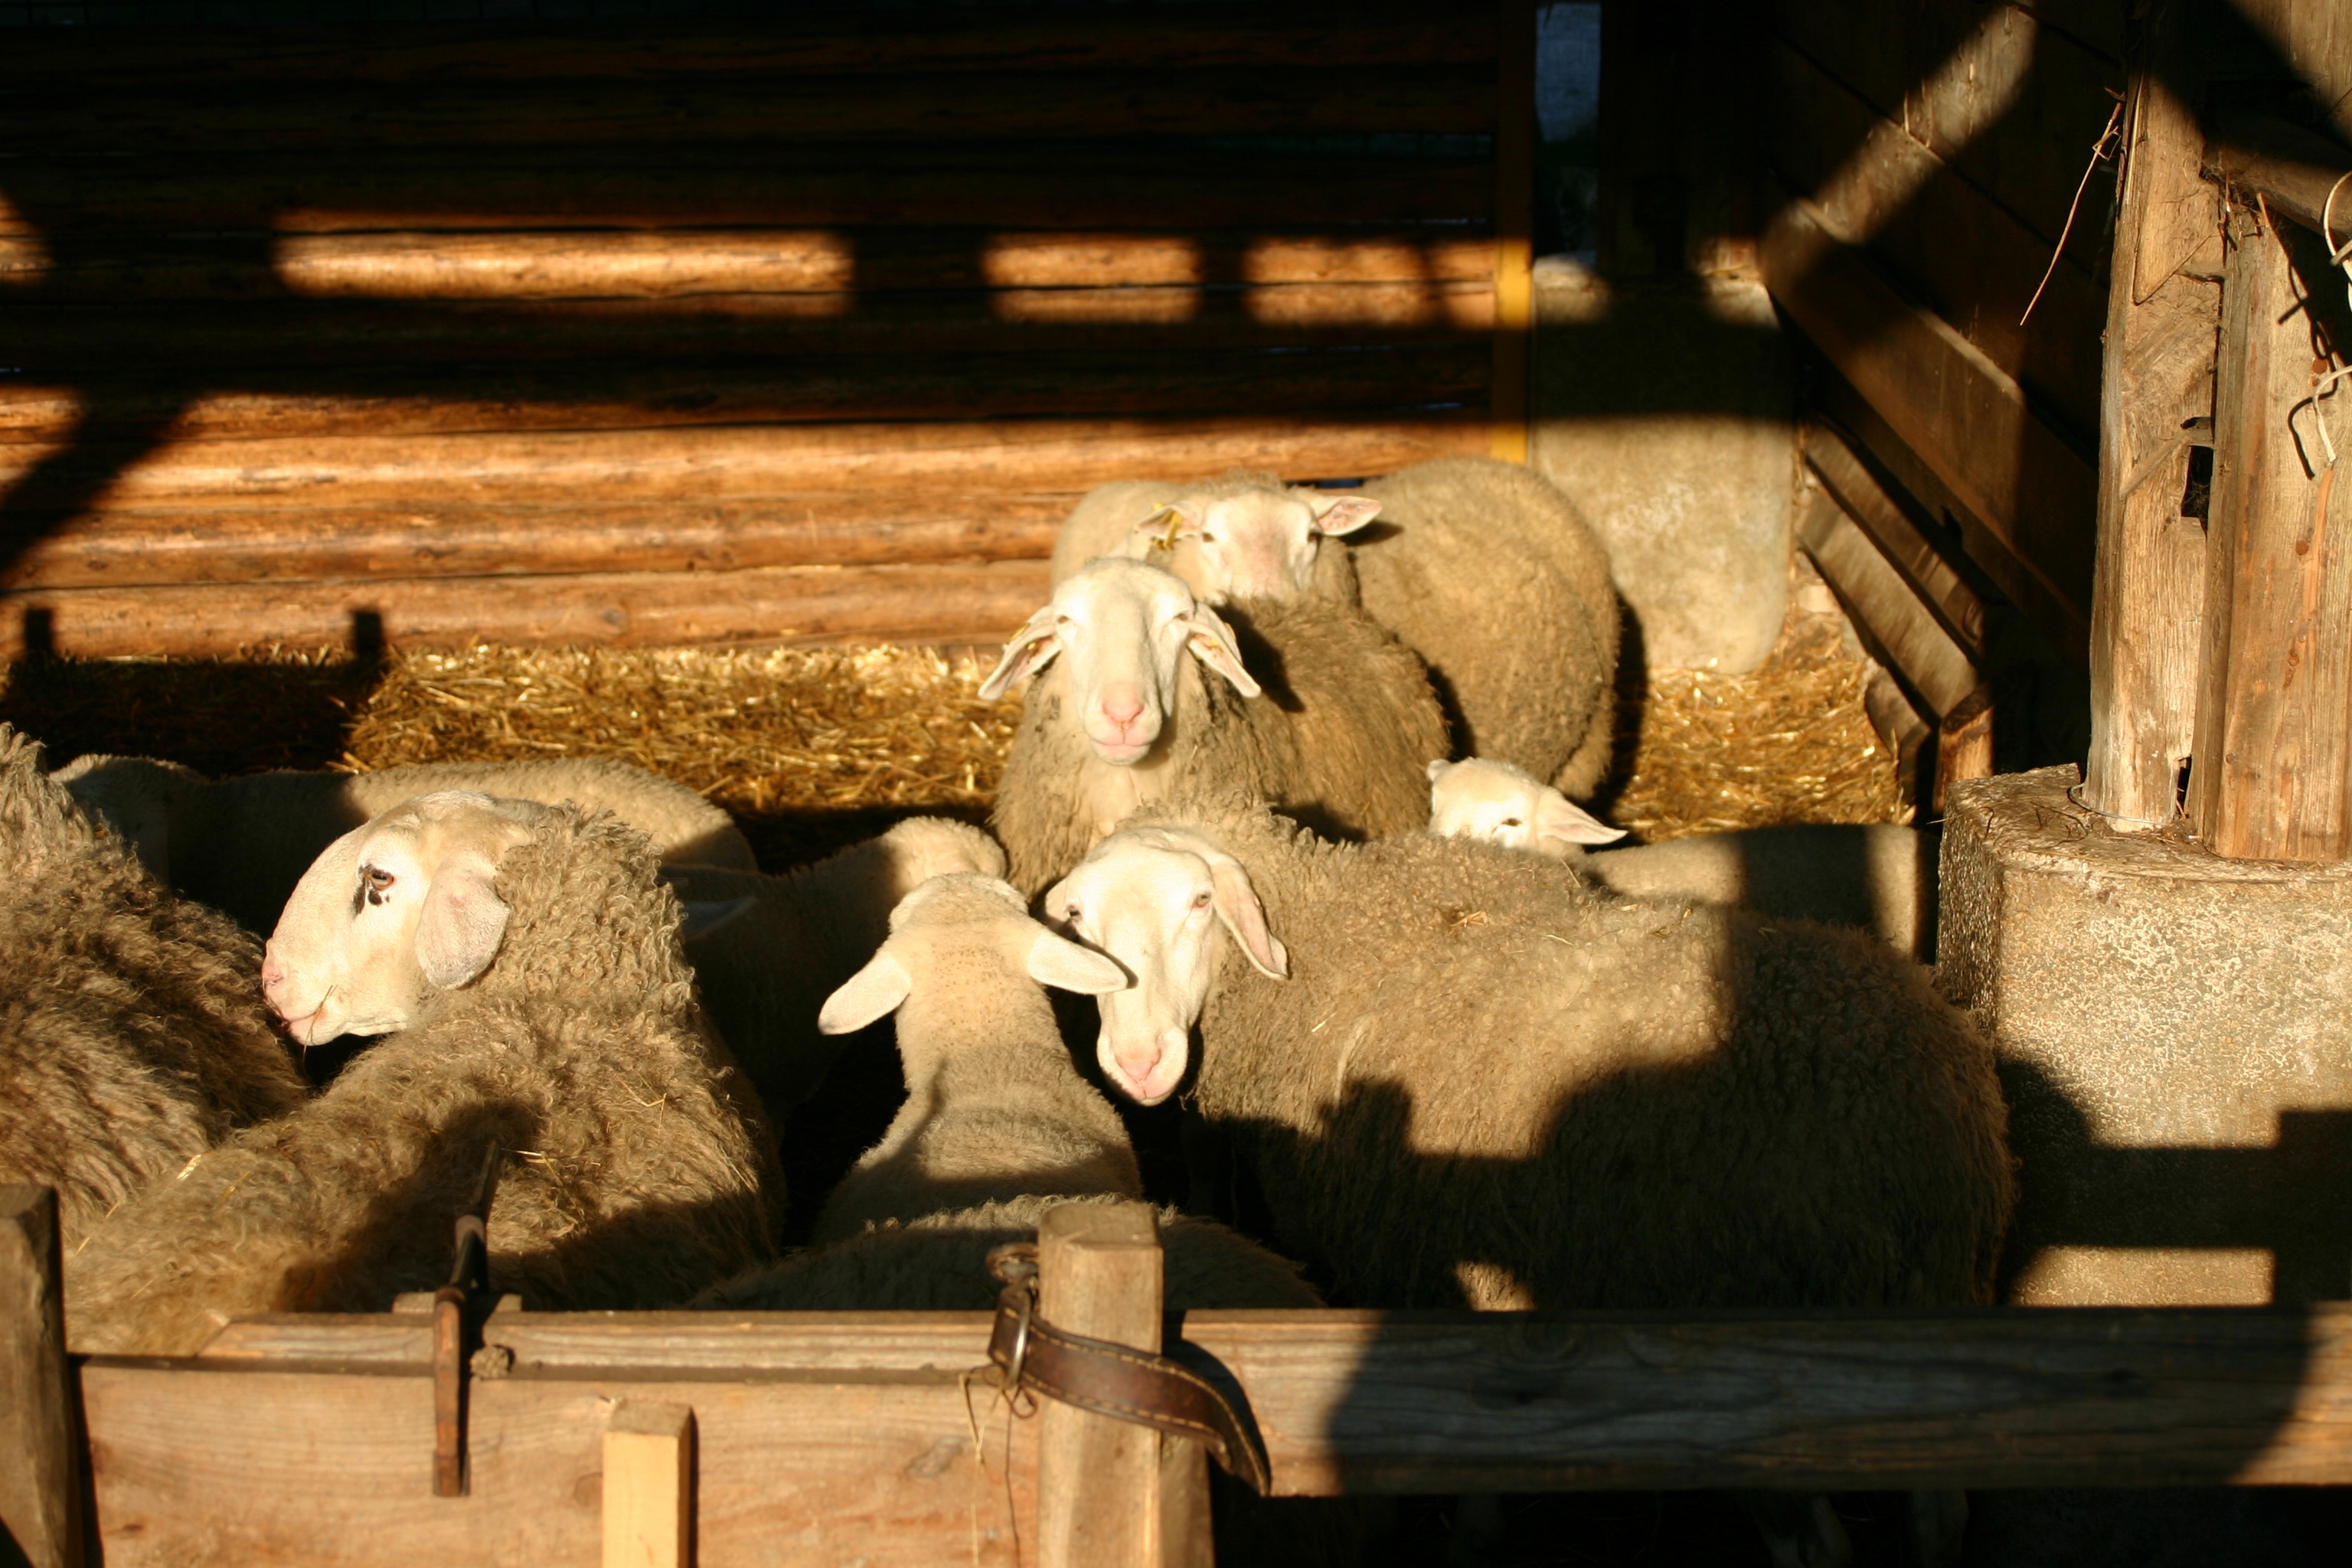 V odprtih hlevih se pozimi ovce rade nastavijo sončnim žarkom. Foto: P.Pšaker